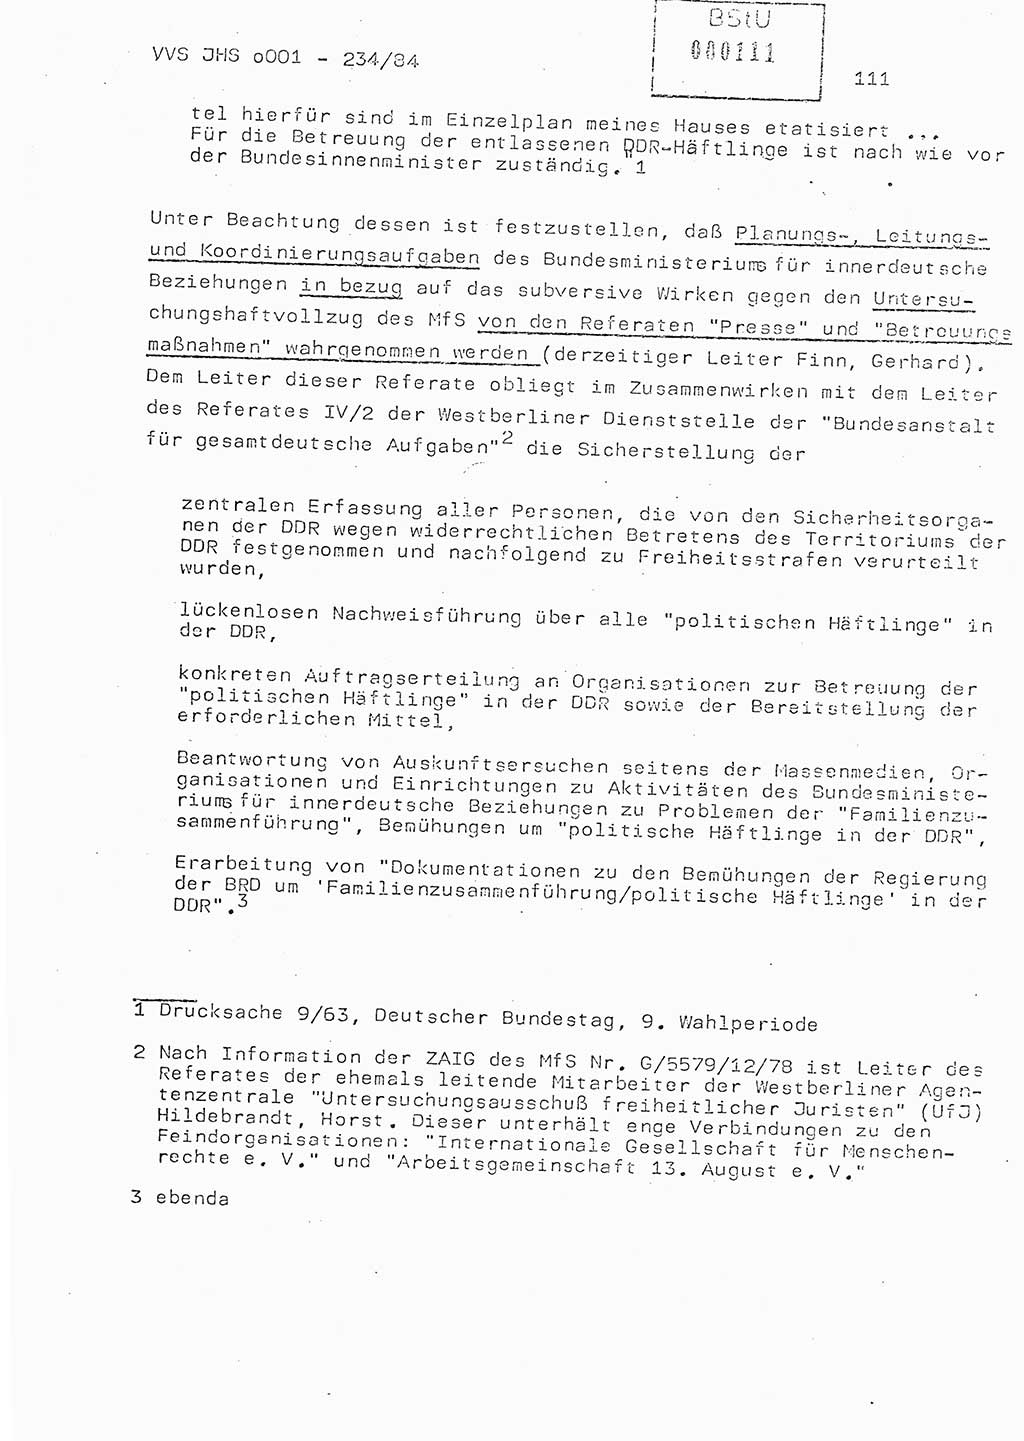 Dissertation Oberst Siegfried Rataizick (Abt. ⅩⅣ), Oberstleutnant Volkmar Heinz (Abt. ⅩⅣ), Oberstleutnant Werner Stein (HA Ⅸ), Hauptmann Heinz Conrad (JHS), Ministerium für Staatssicherheit (MfS) [Deutsche Demokratische Republik (DDR)], Juristische Hochschule (JHS), Vertrauliche Verschlußsache (VVS) o001-234/84, Potsdam 1984, Seite 111 (Diss. MfS DDR JHS VVS o001-234/84 1984, S. 111)